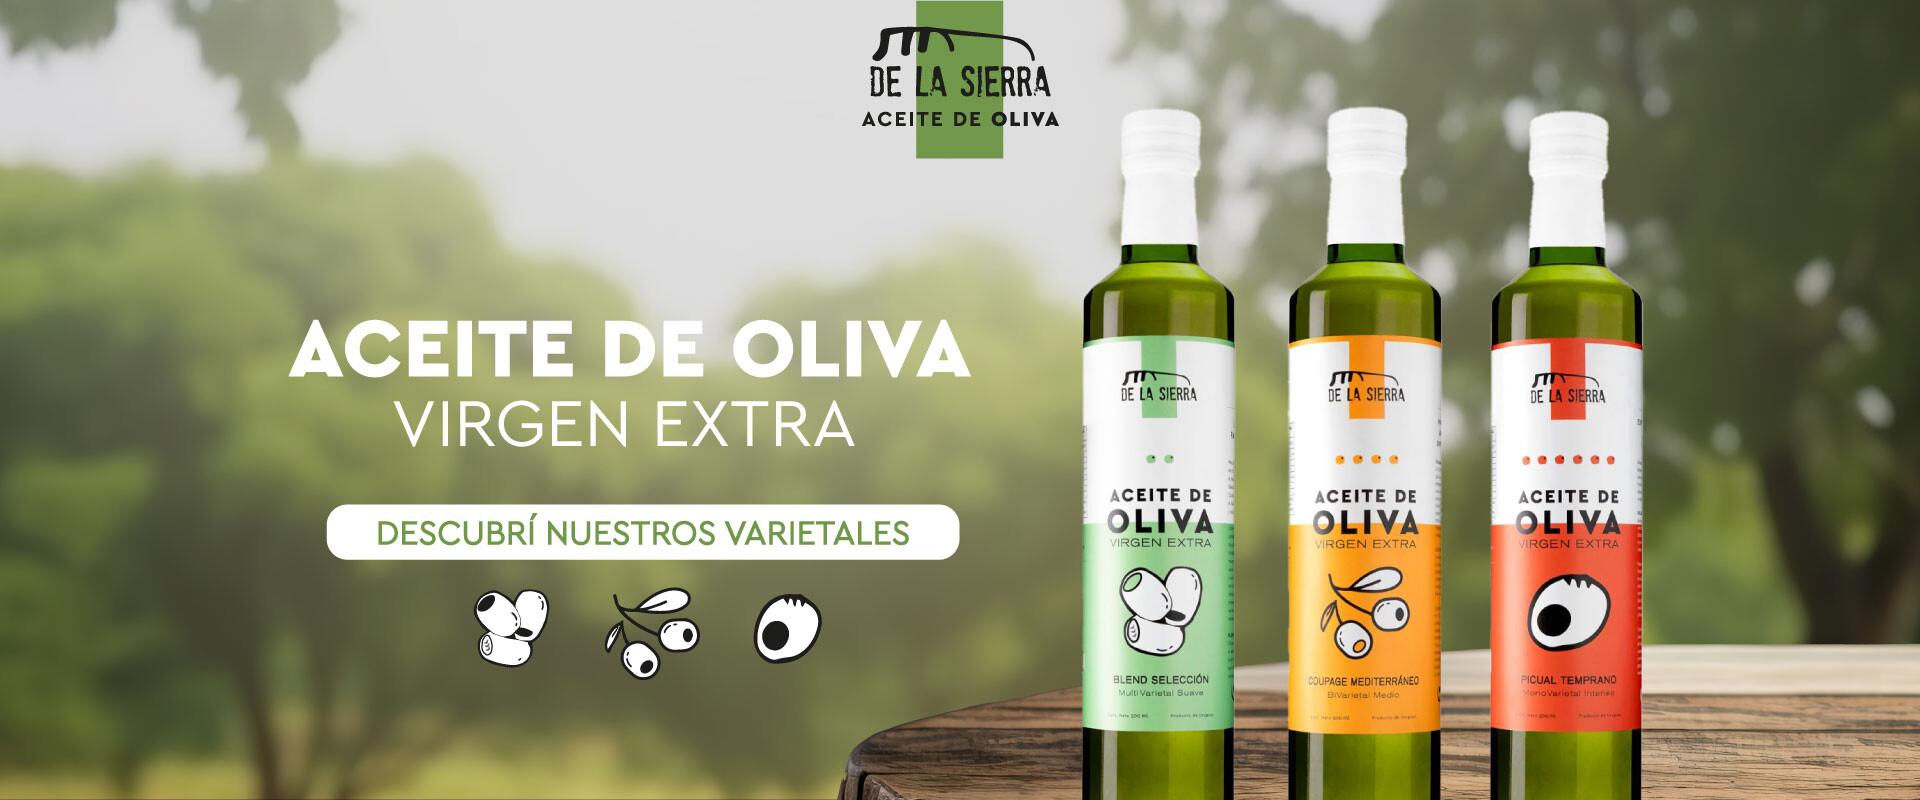 De la Sierra, Aceite de Oliva Virgen Extra. Nuestros varietales.